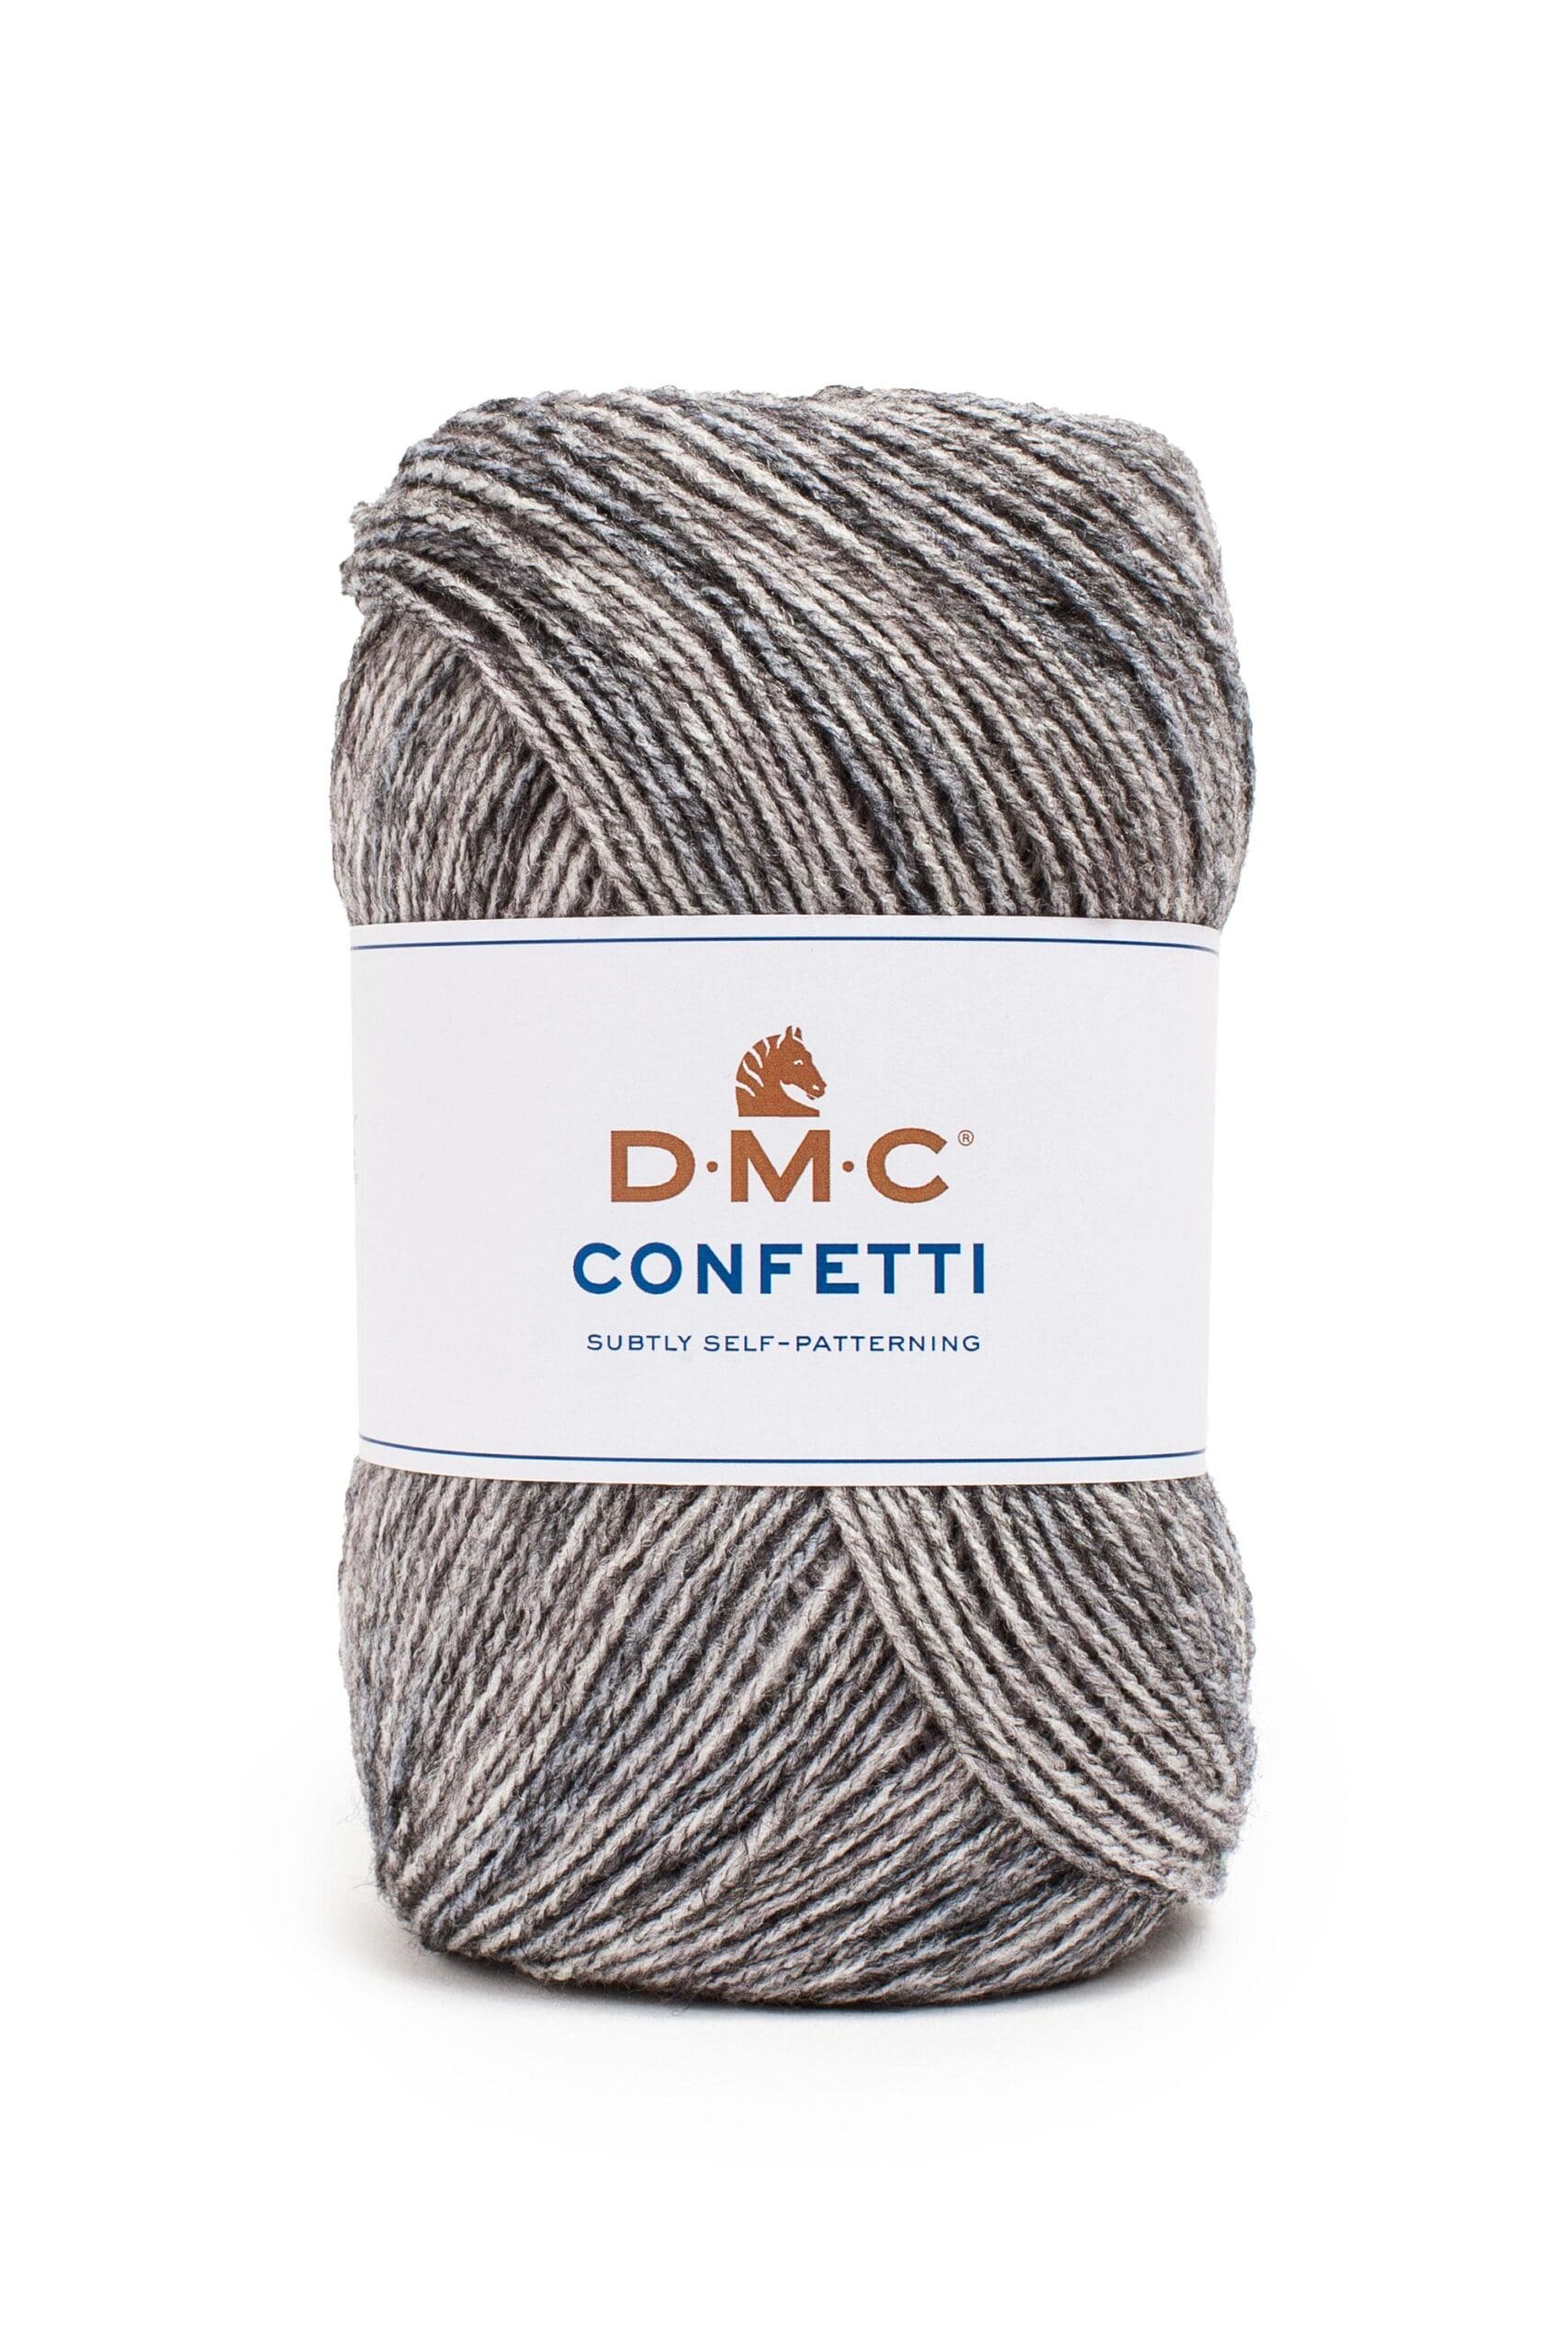 DMC Confetti Yarn (8147/DMC) - 557